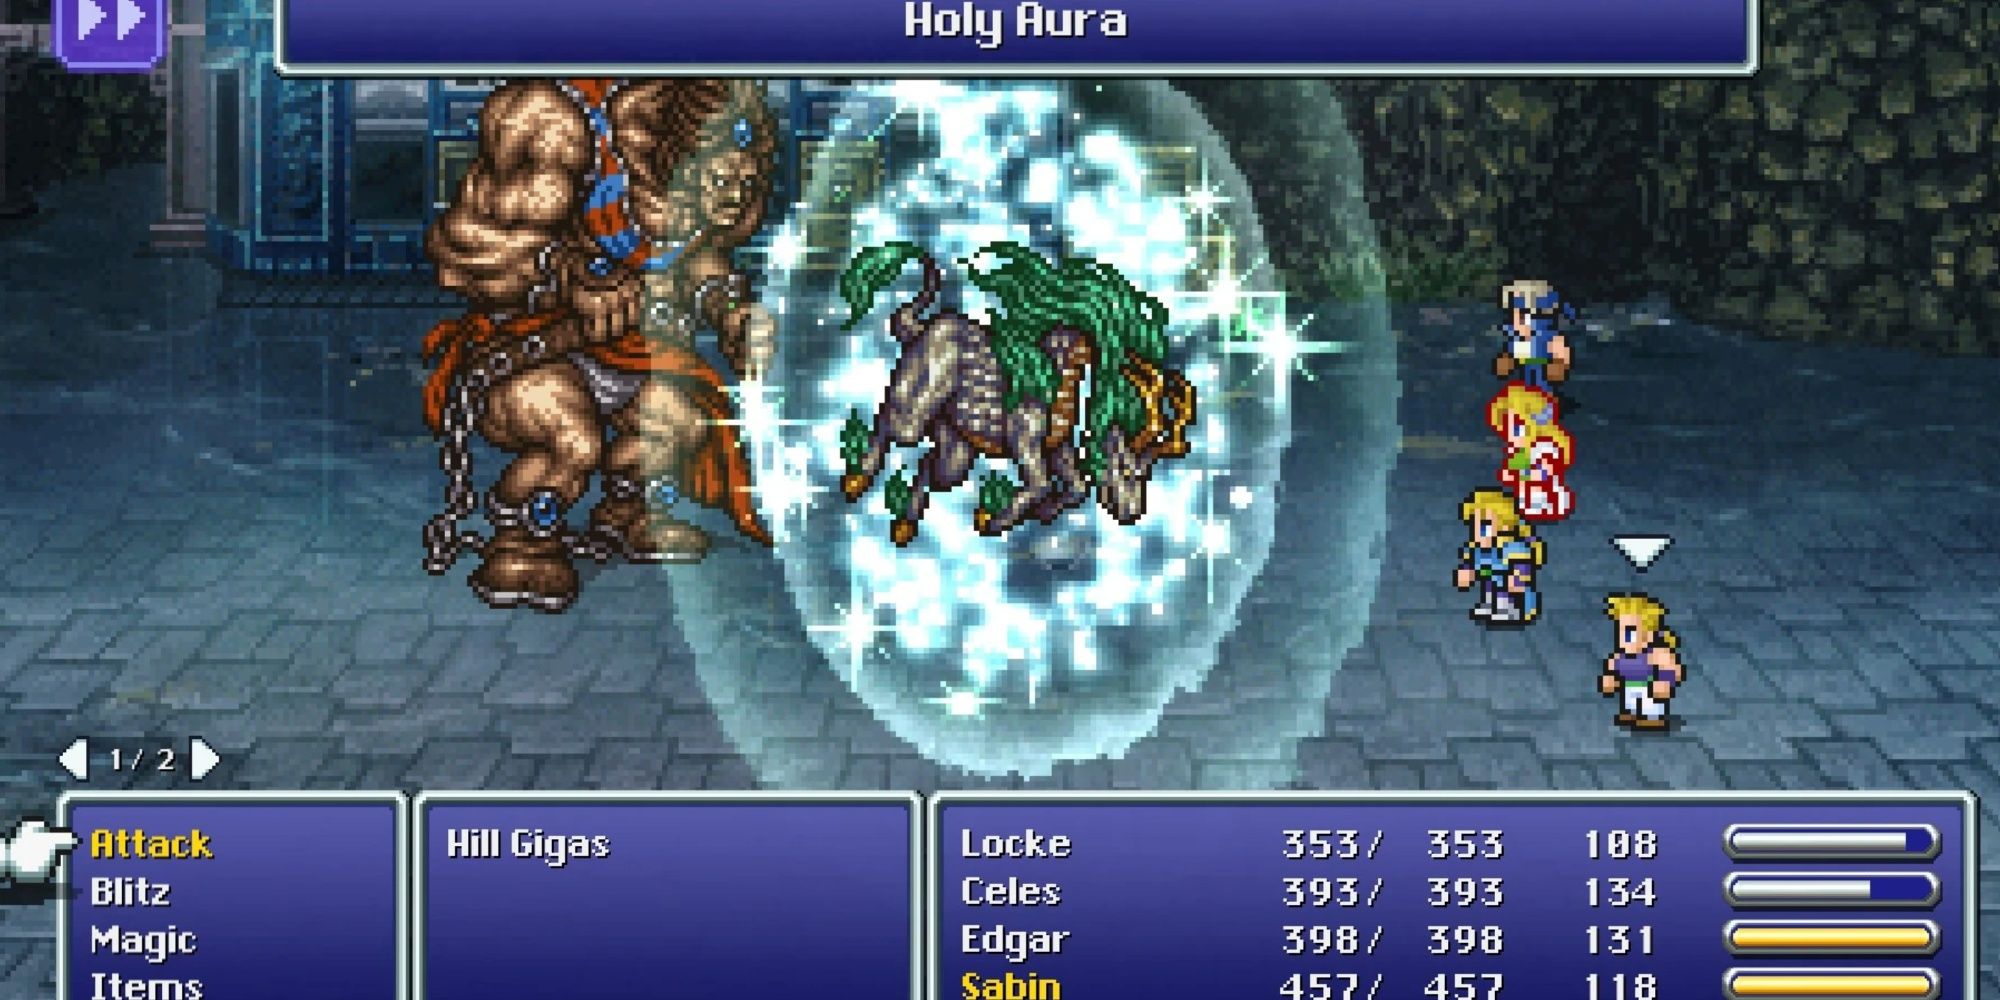 Das Kirin Eidolon wird in Final Fantasy VI verwendet.  Eine silberne, pferdeähnliche Kreatur erzeugt eine heilige Aura.